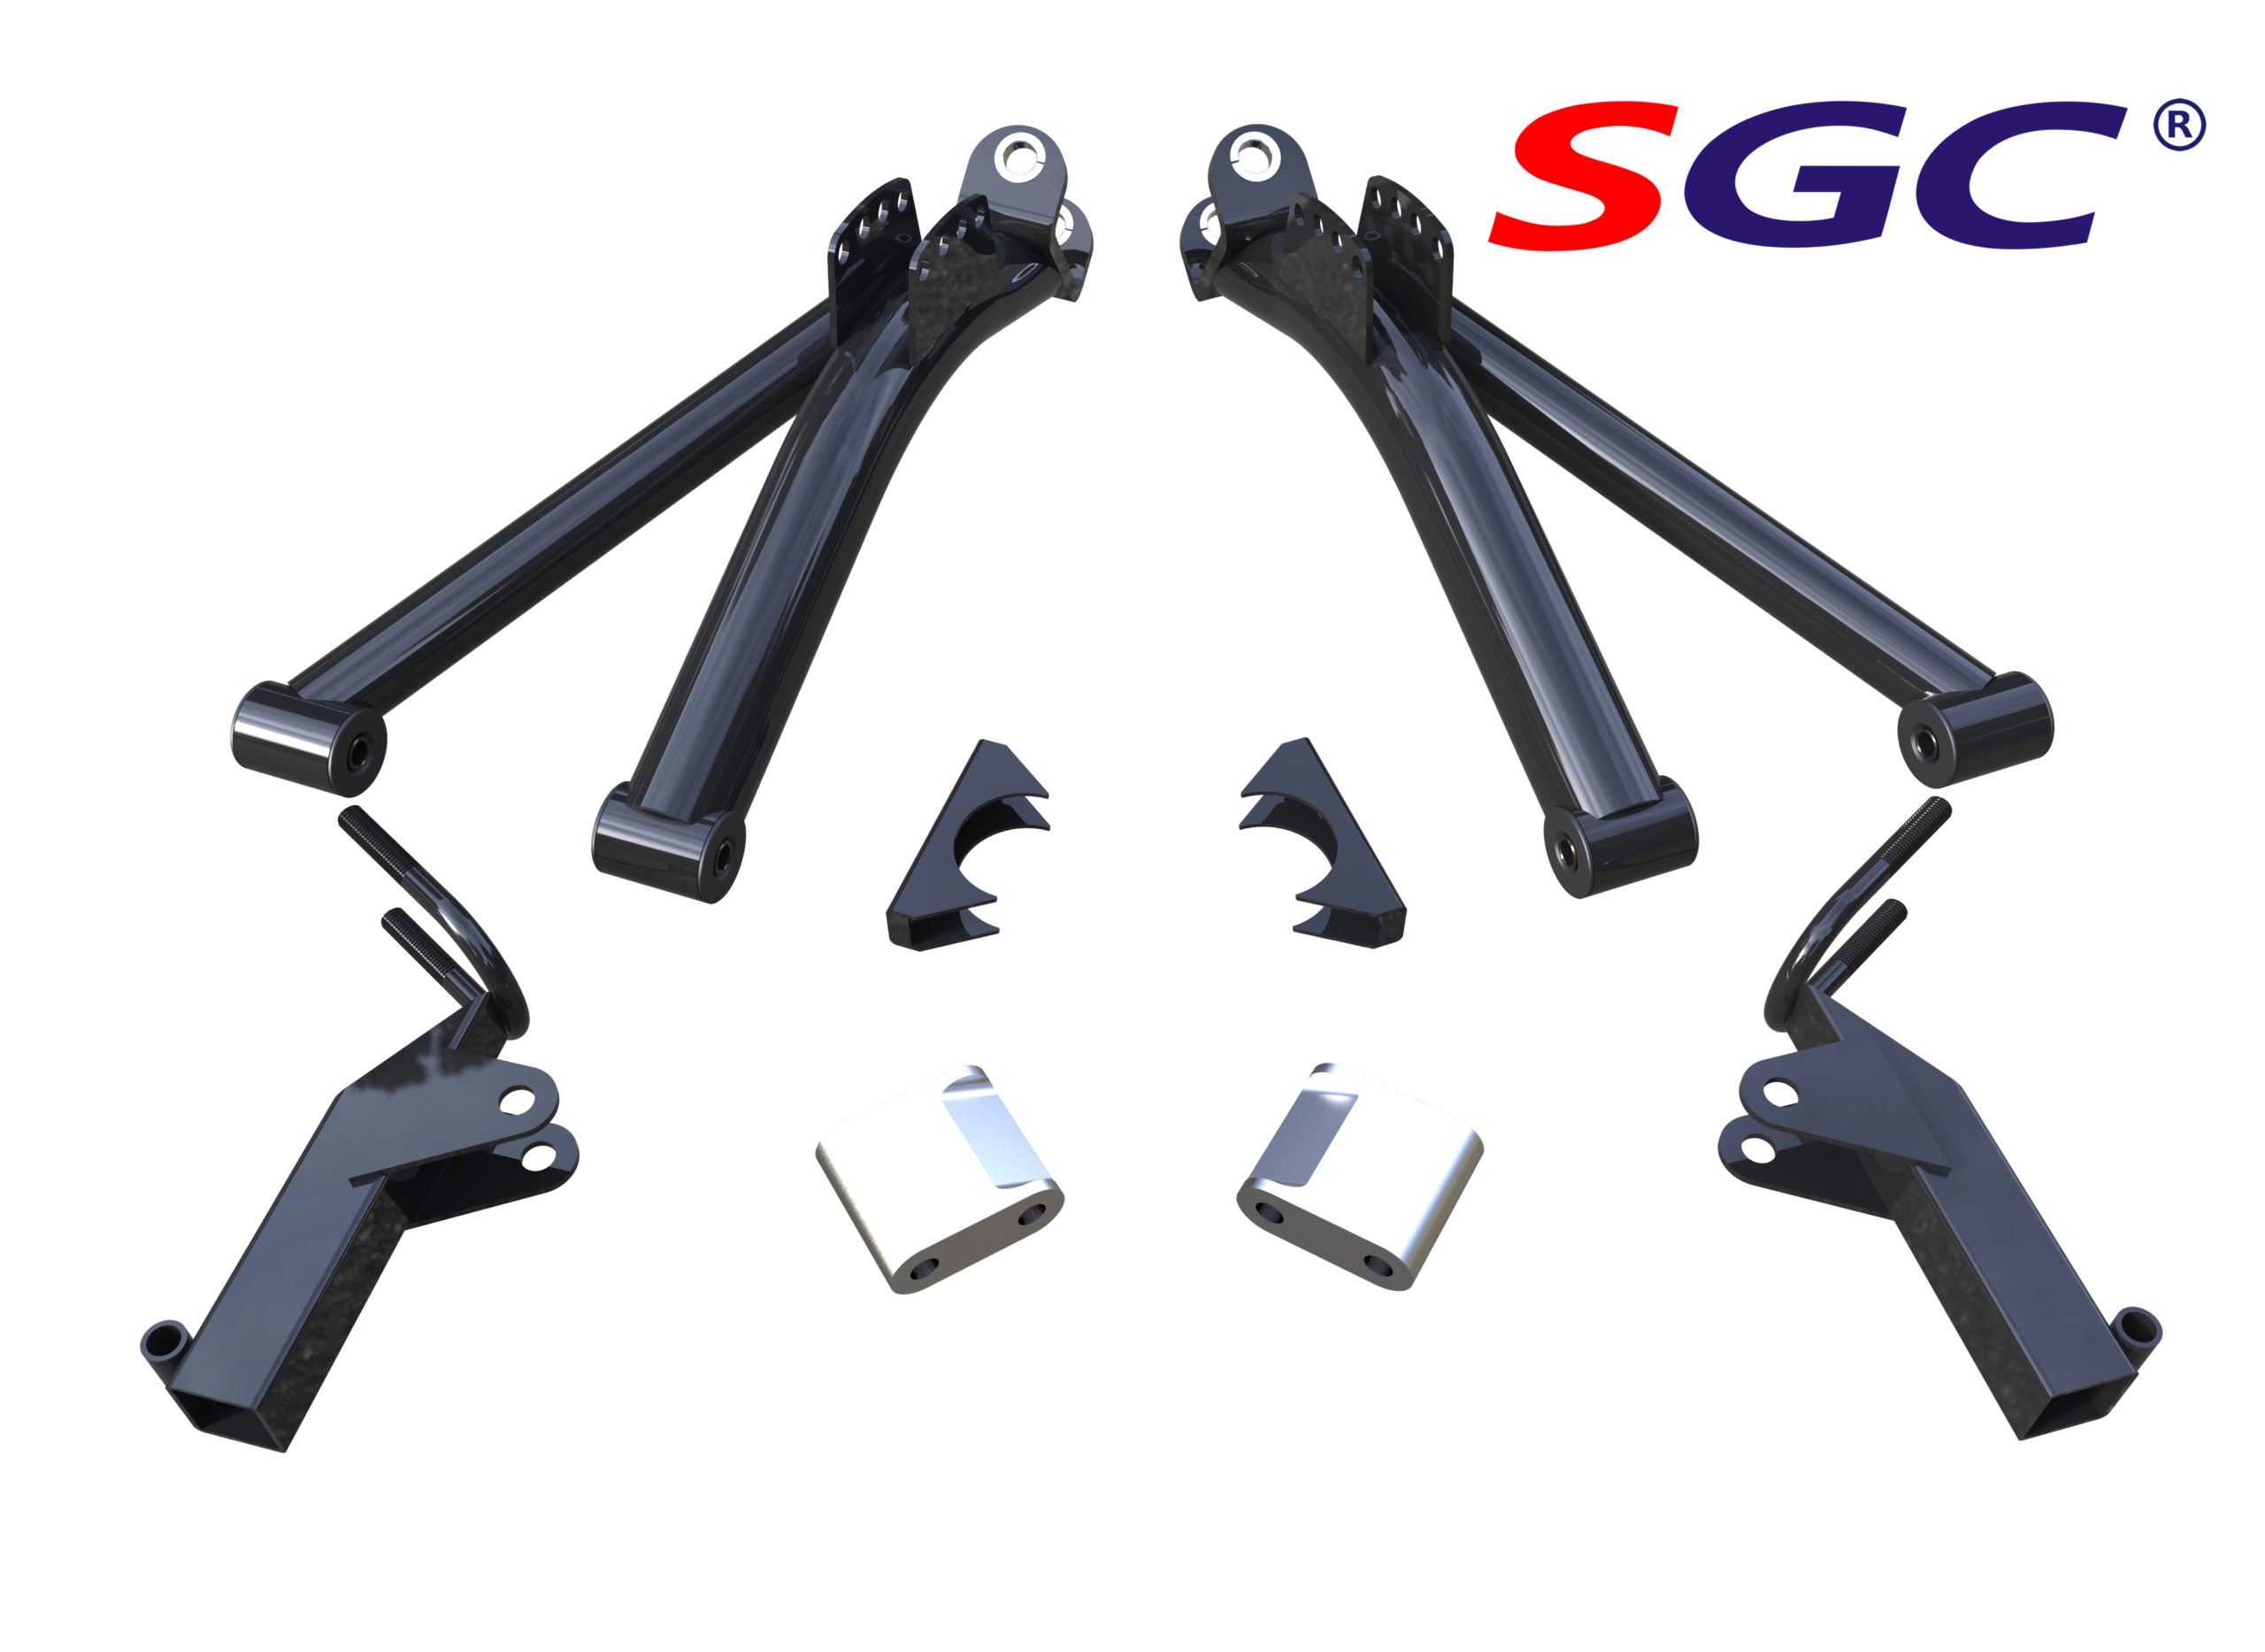 SGC 6'' A-ARM LIFT KIT FOR YAMAHA G8-G14/G16/G19/G20 GOLF CART LKYM02